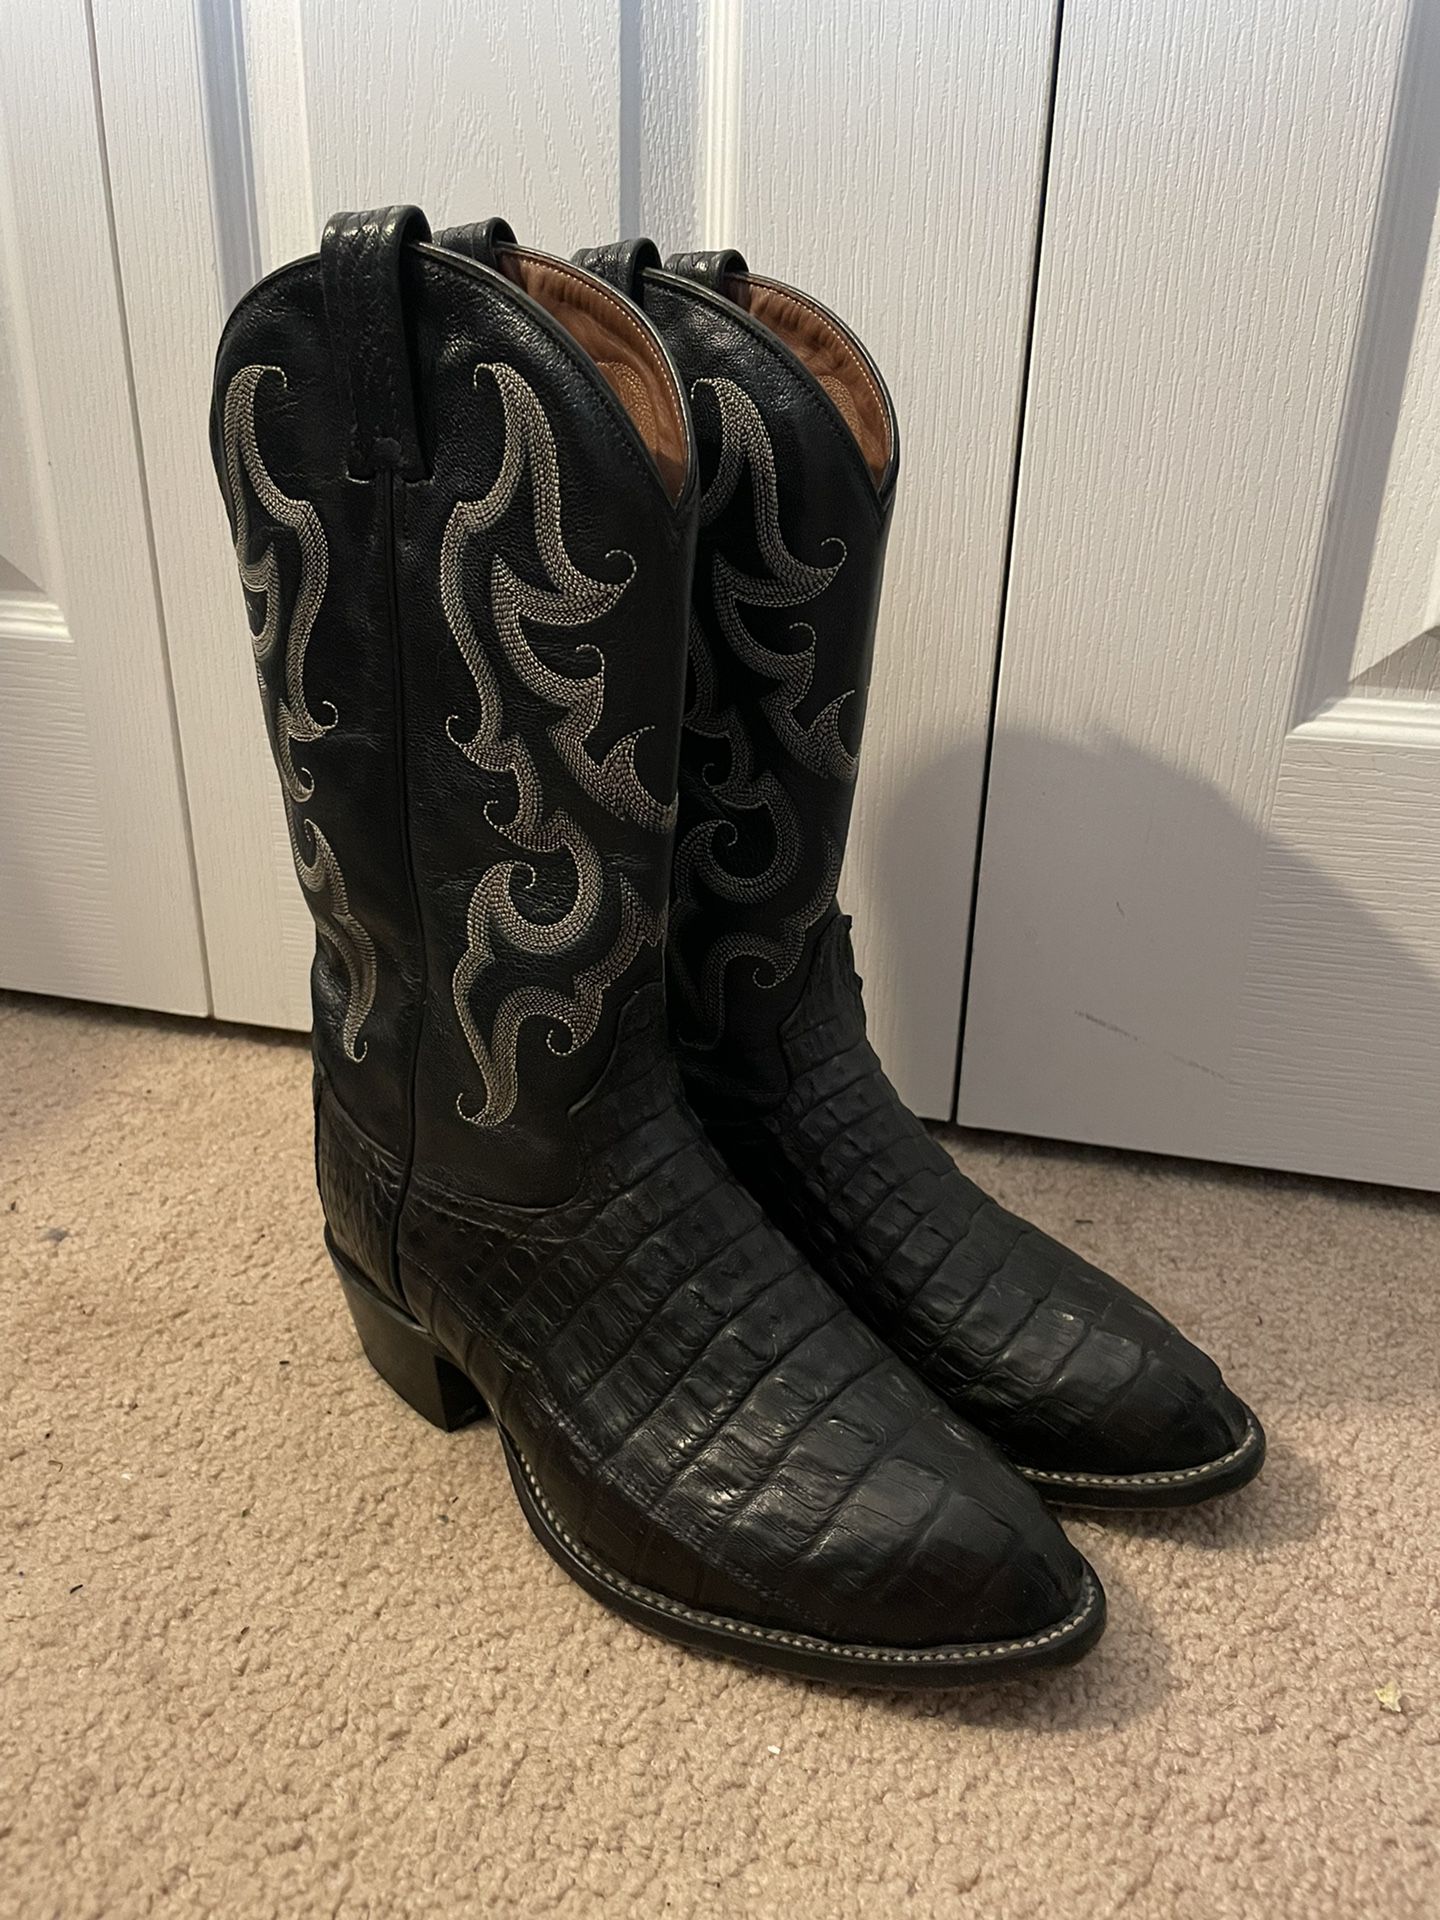 Tony Lama Alligator Boots Size 9 EE